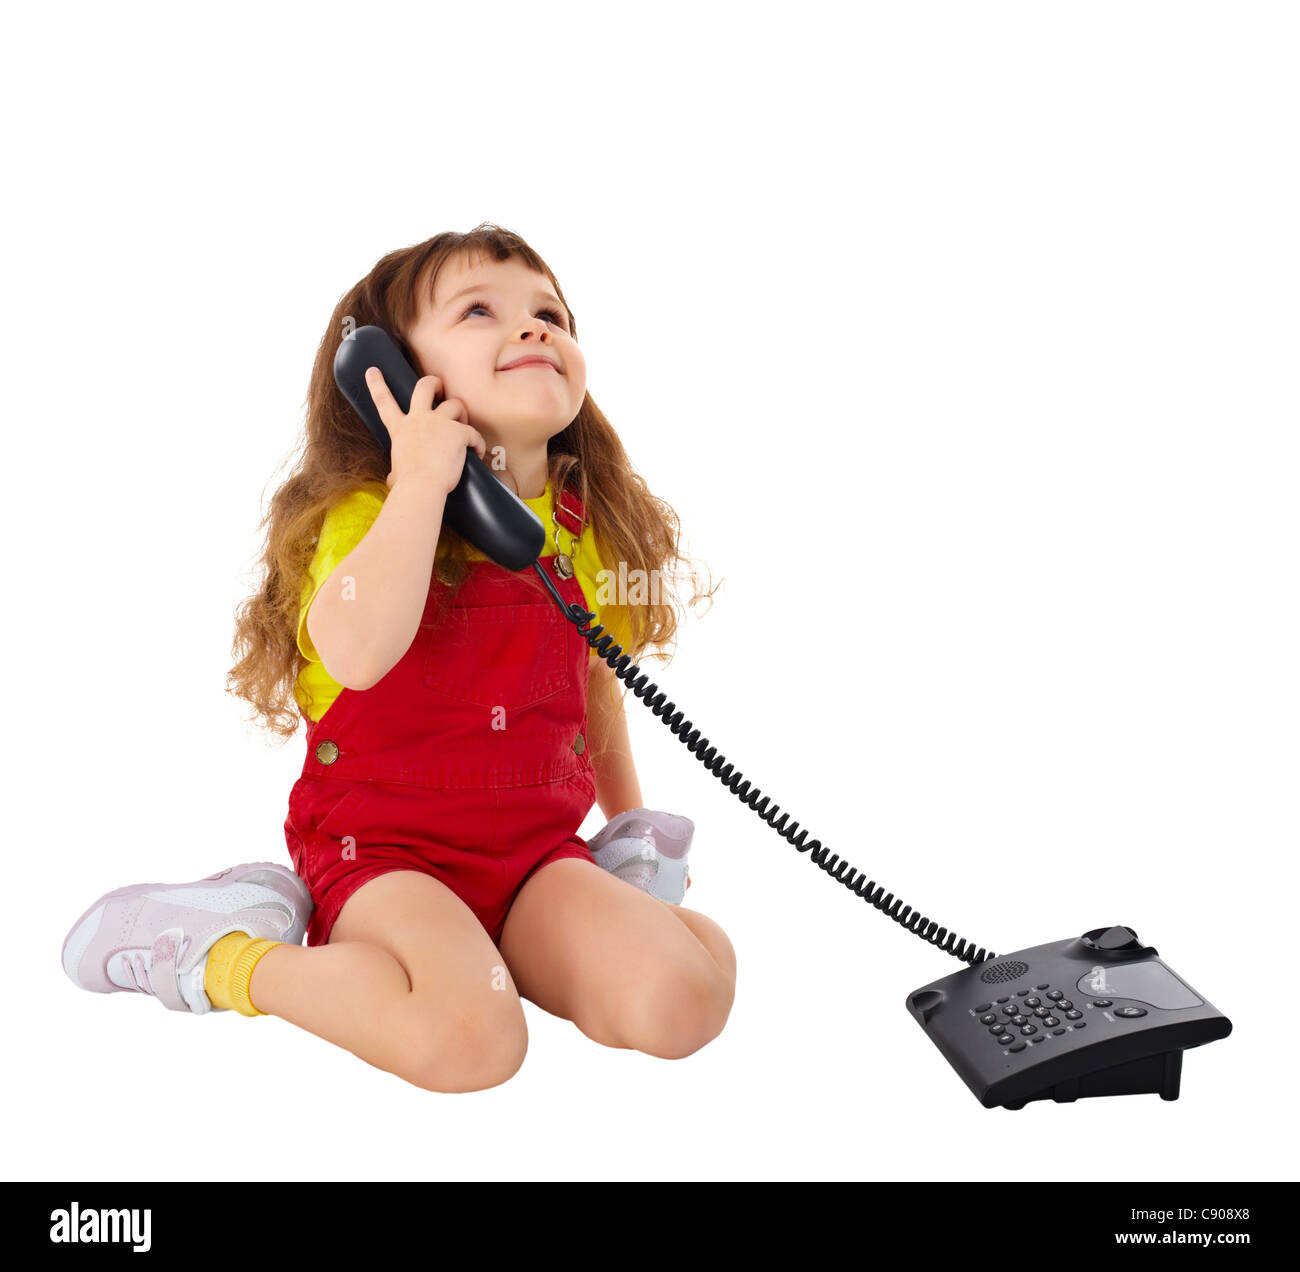 Разговор по телефону для ребенка. Ребенок с телефонной трубкой. Девочка разговаривает по телефону. Девочка с телефоном. Маленькая девочка с телефоном.